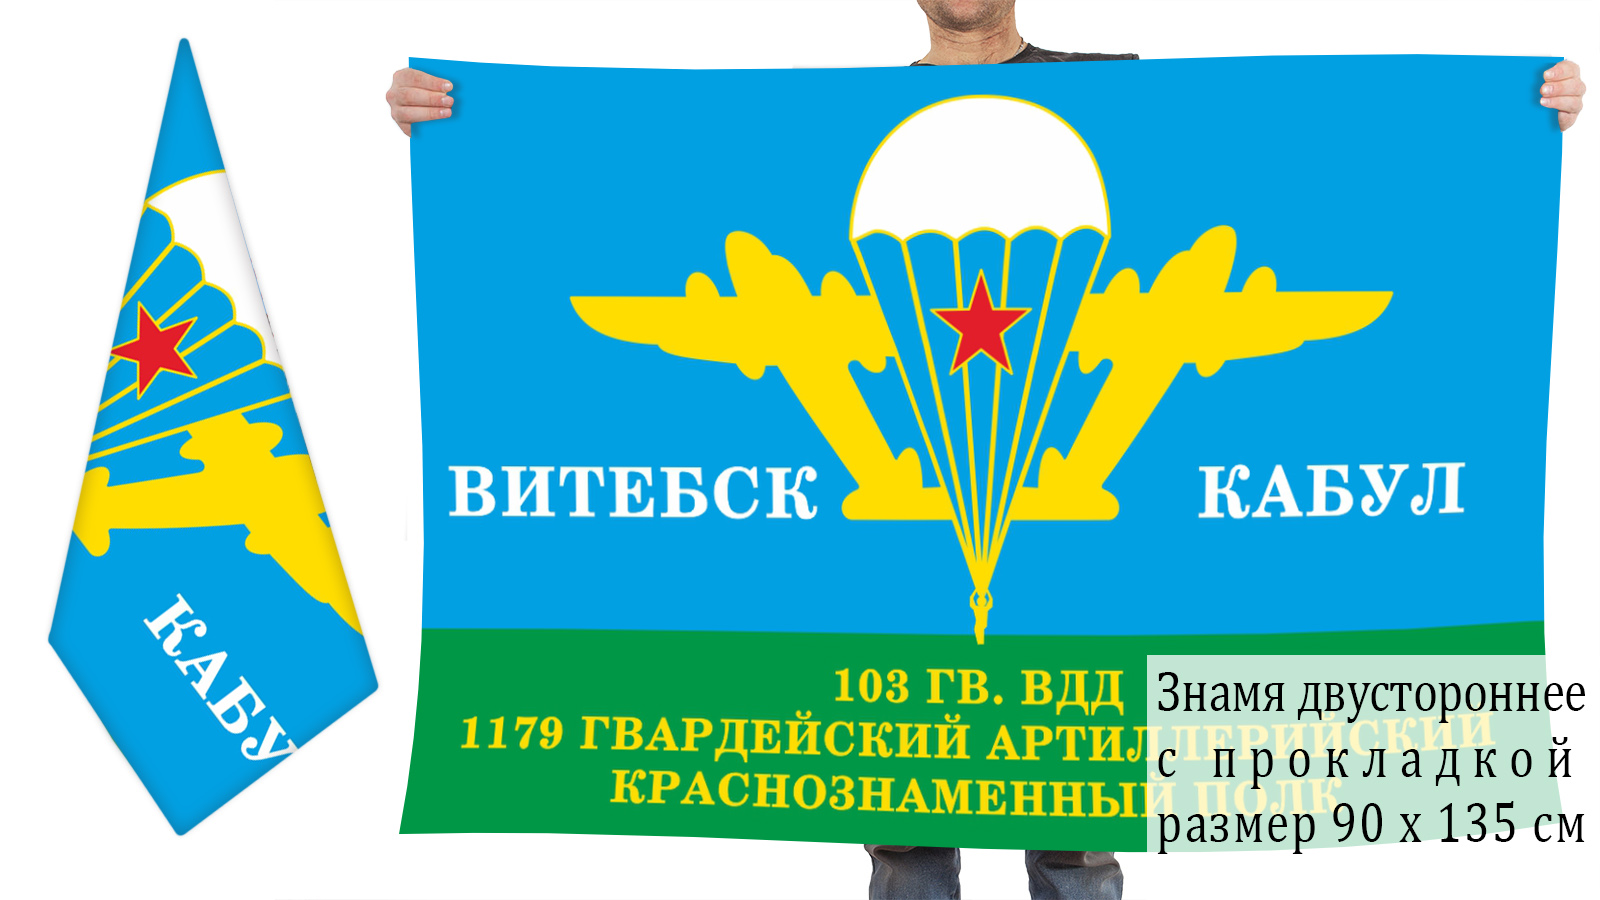 Двухсторонний флаг 1179 гв. артполка 103 гв. дивизии ВДВ «Витебск - Кабул»